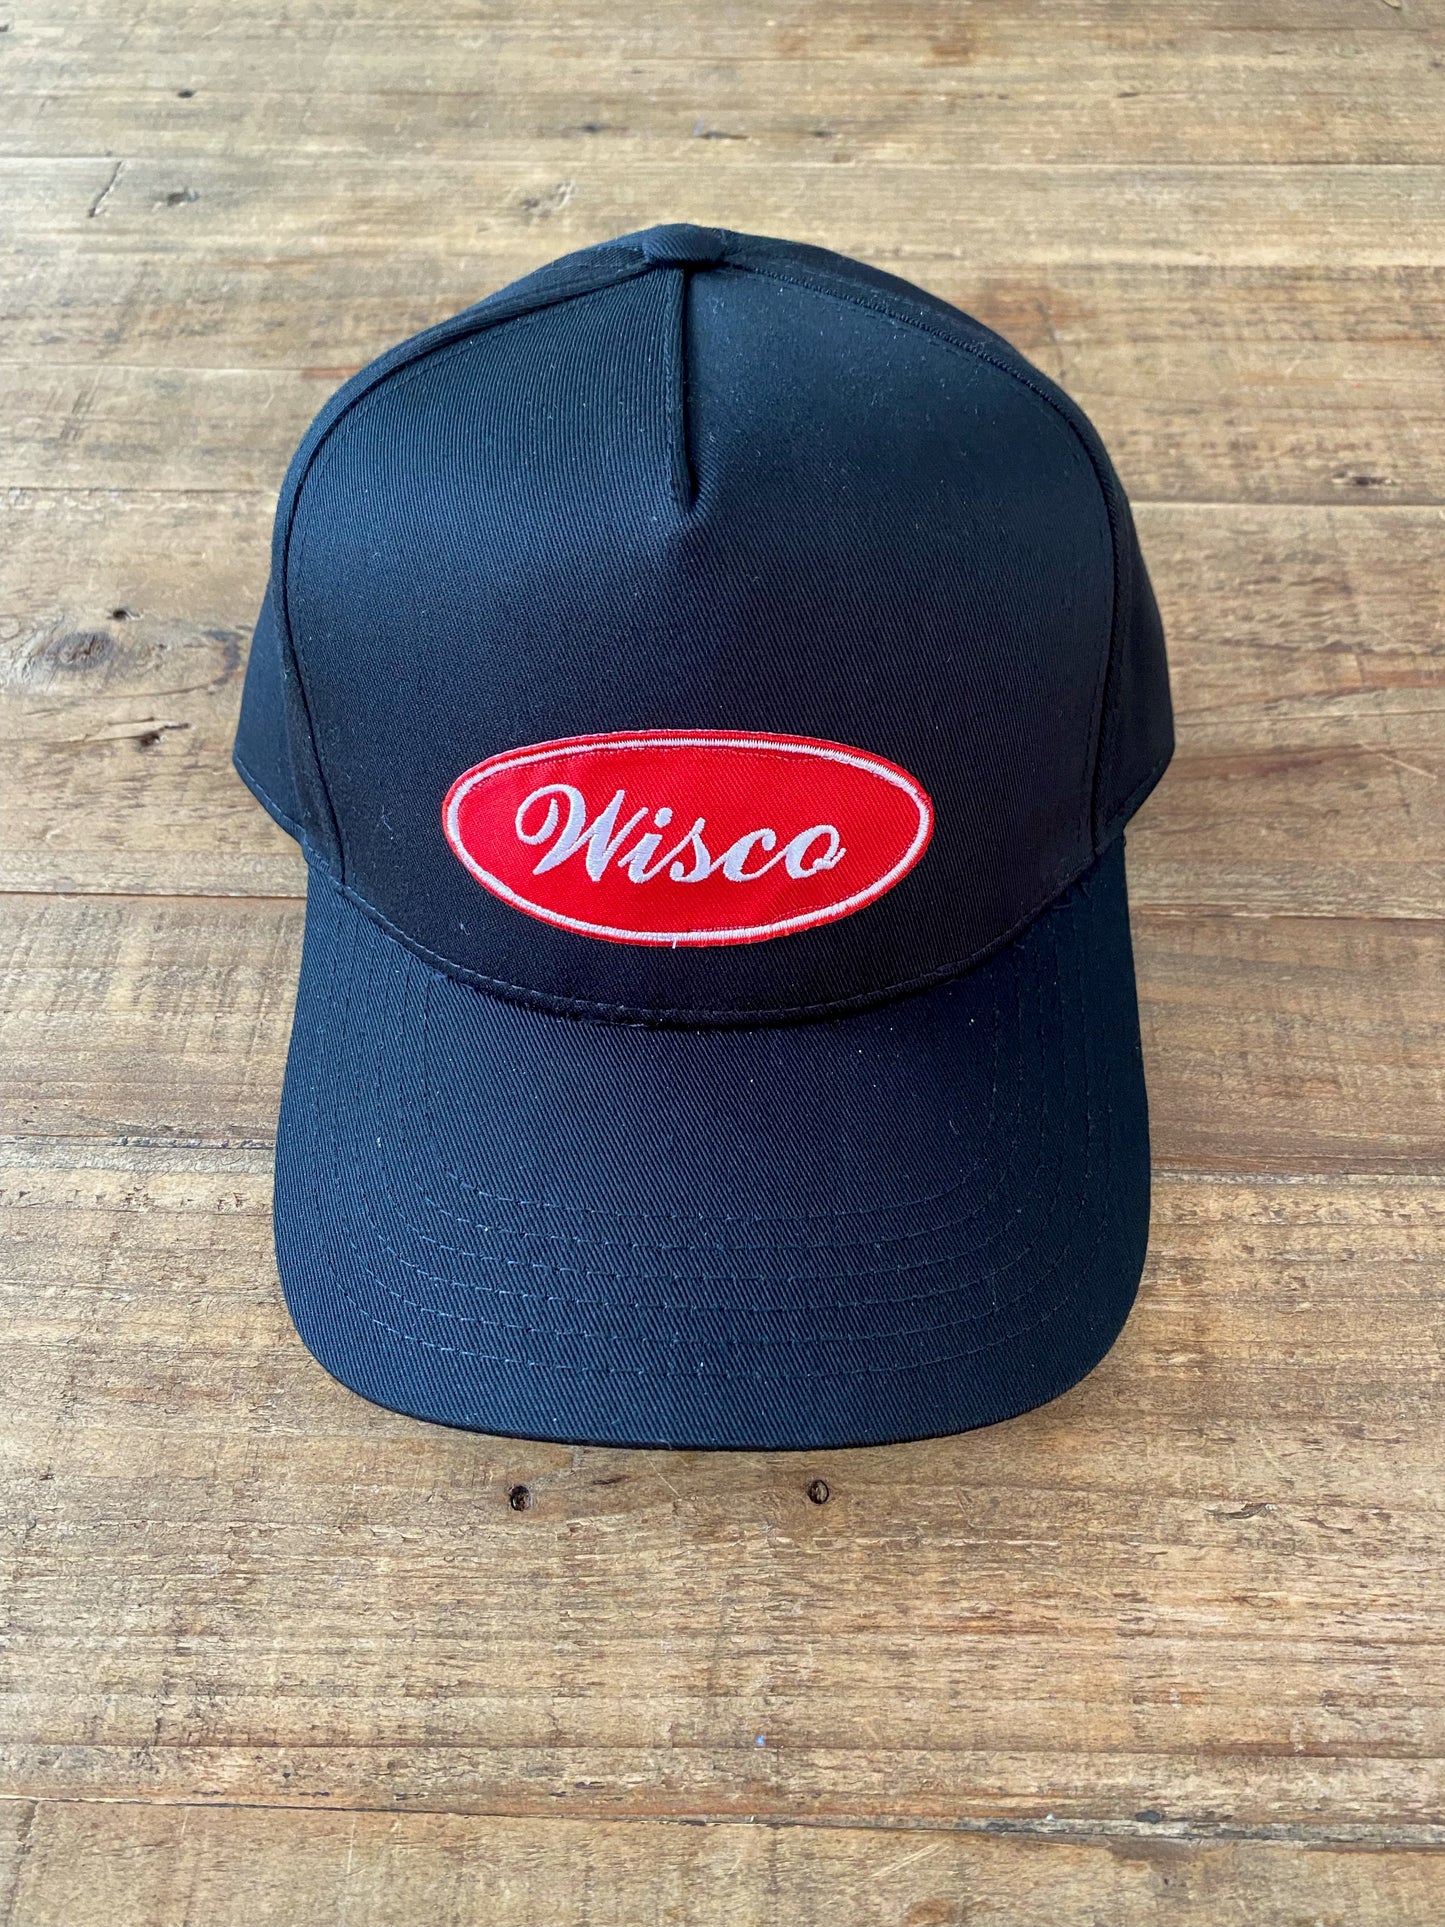 Wisco Industrial Specialty Cap